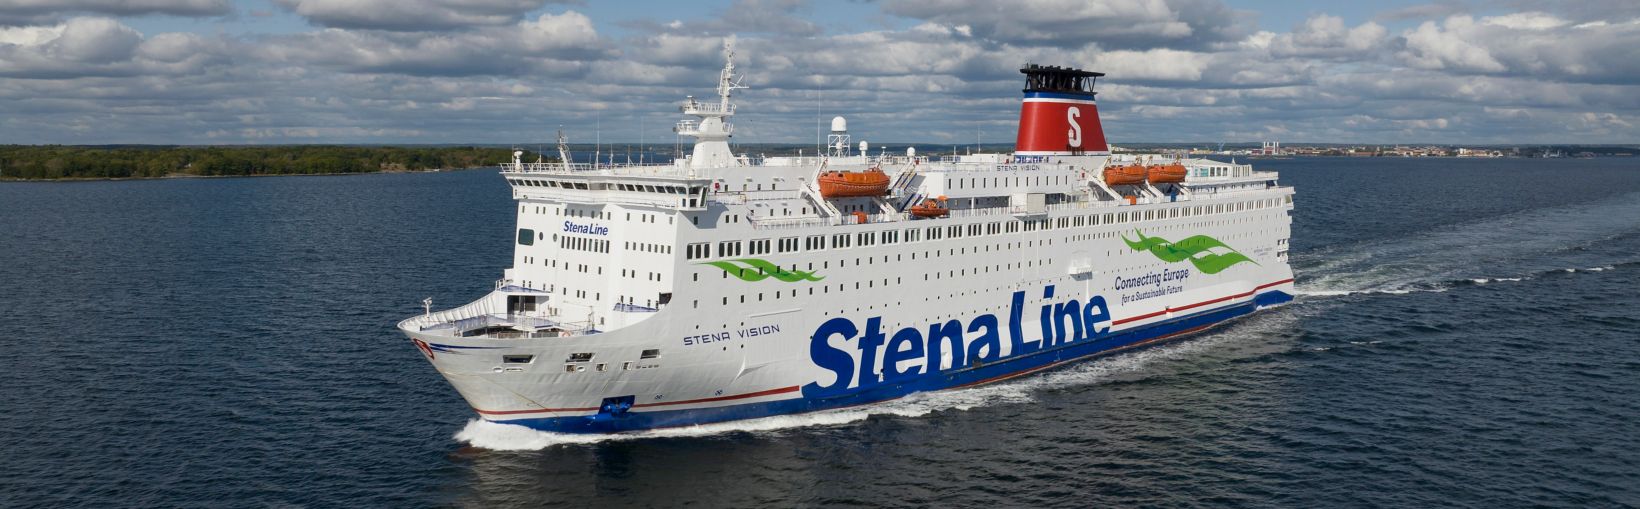 Stena Vision at Sea